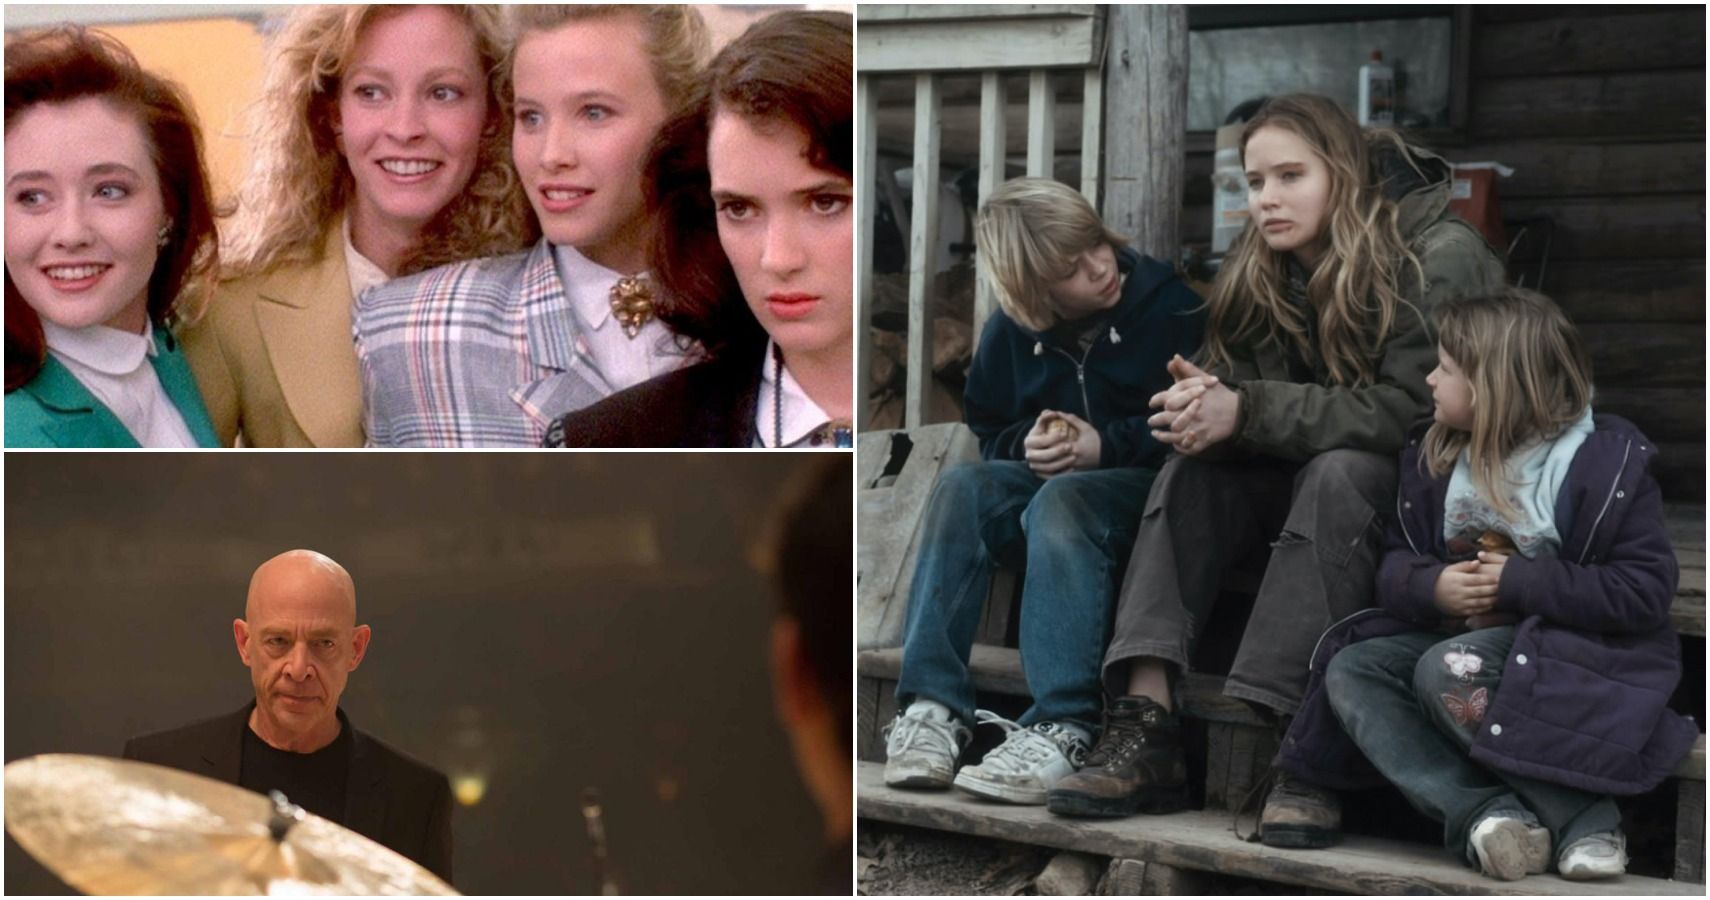 Suncoast Cast & Director On How Laura Linney Film Explores Joy & Grief [Sundance]